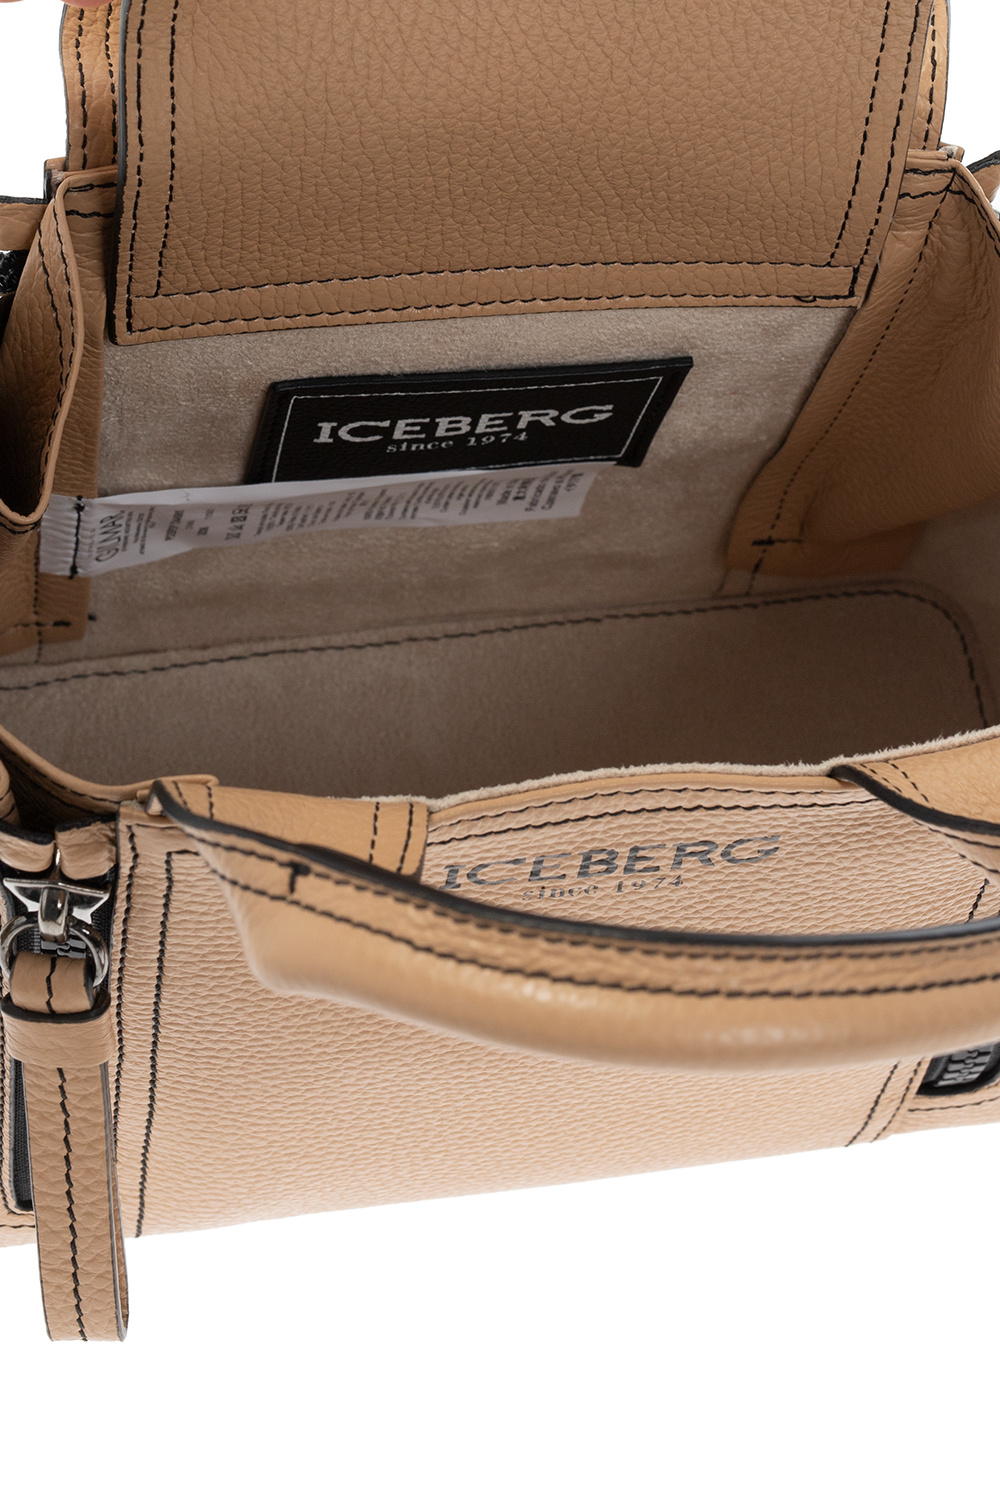 Iceberg Leather shoulder bag